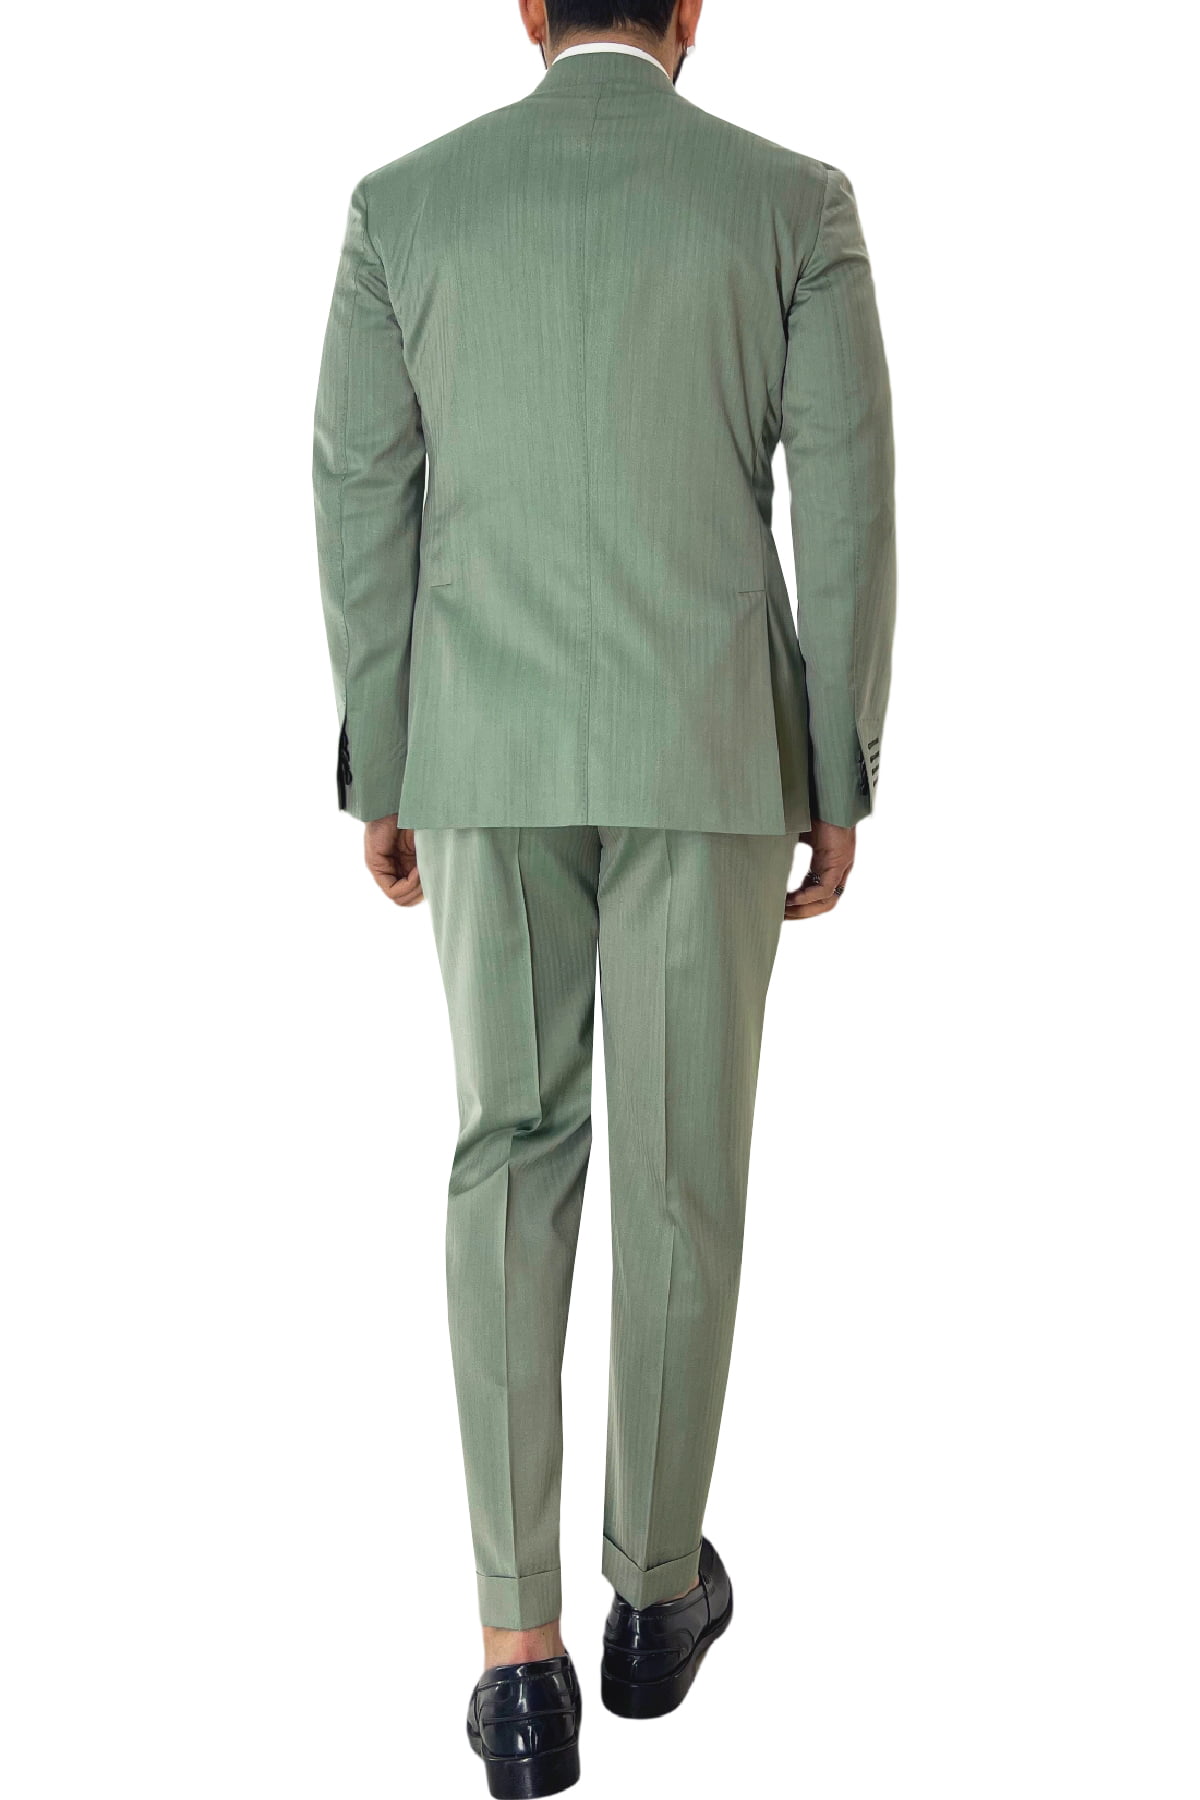 Abito uomo monopetto verde Solaro in fresco lana e seta Holland & Sherry con pantalone vita alta